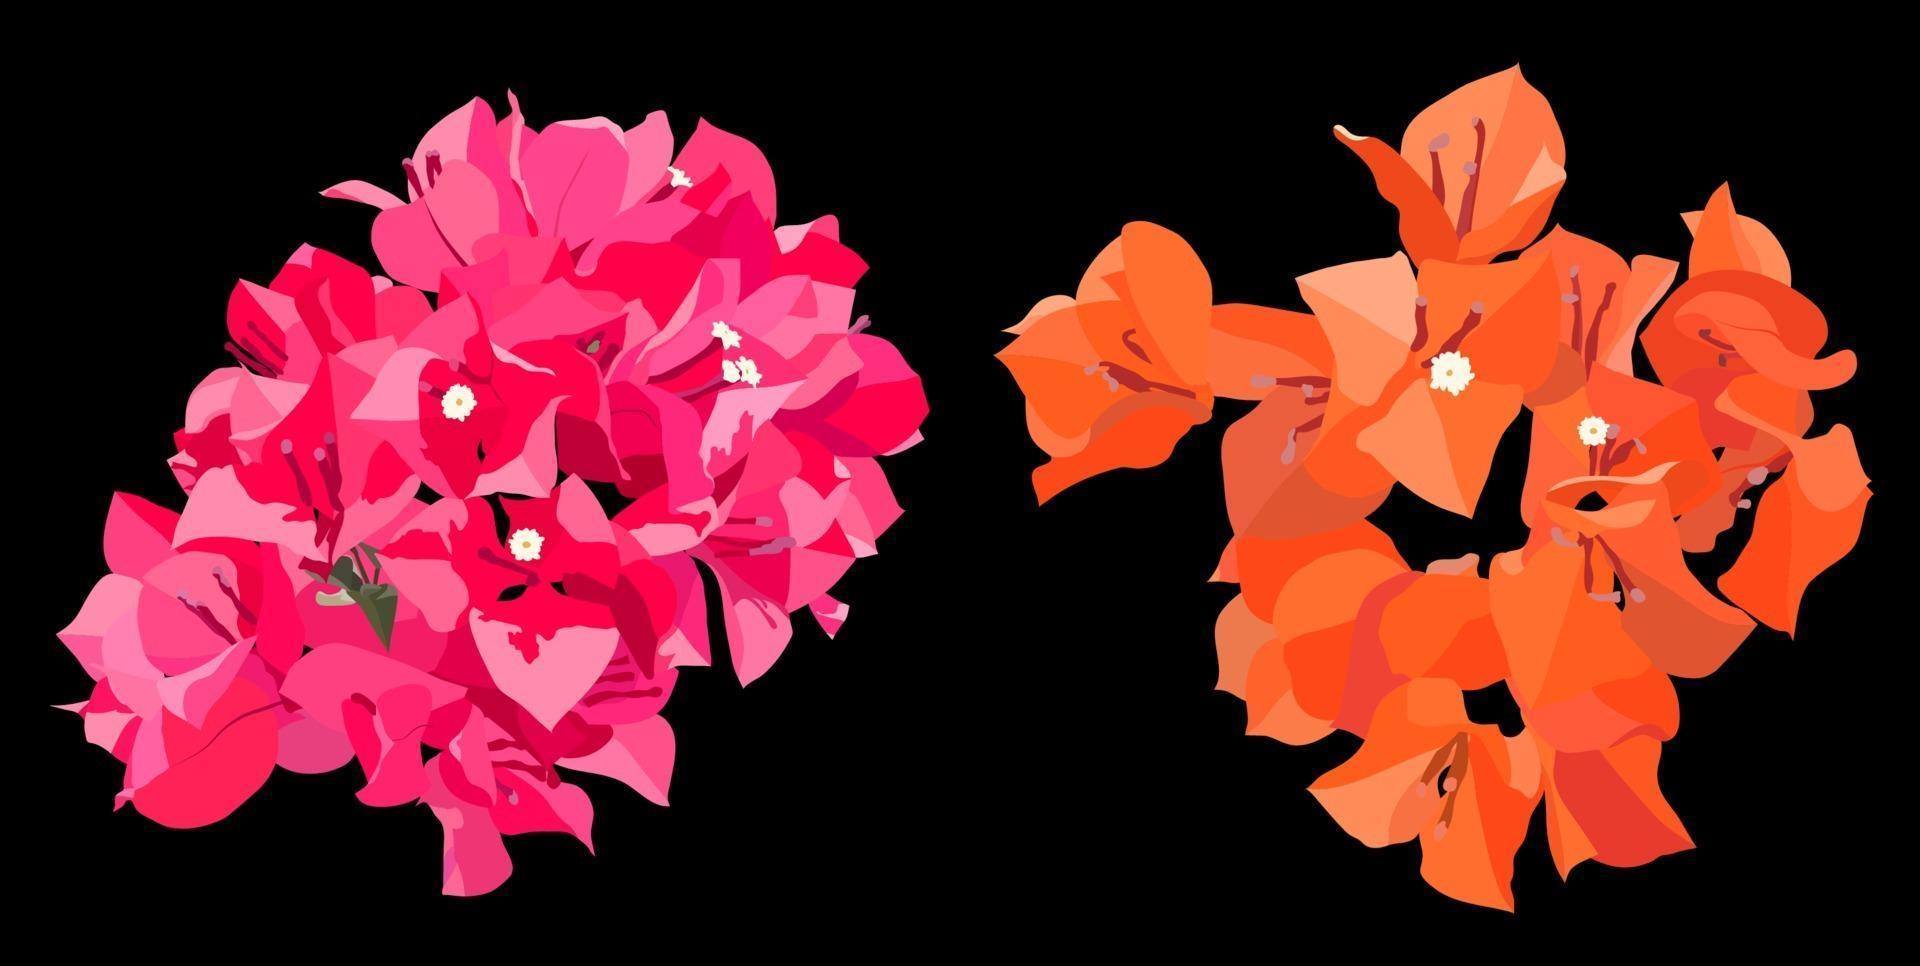 buganvillas rosadas y naranjas sobre fondo oscuro, estilo plano mínimo vectorial vector